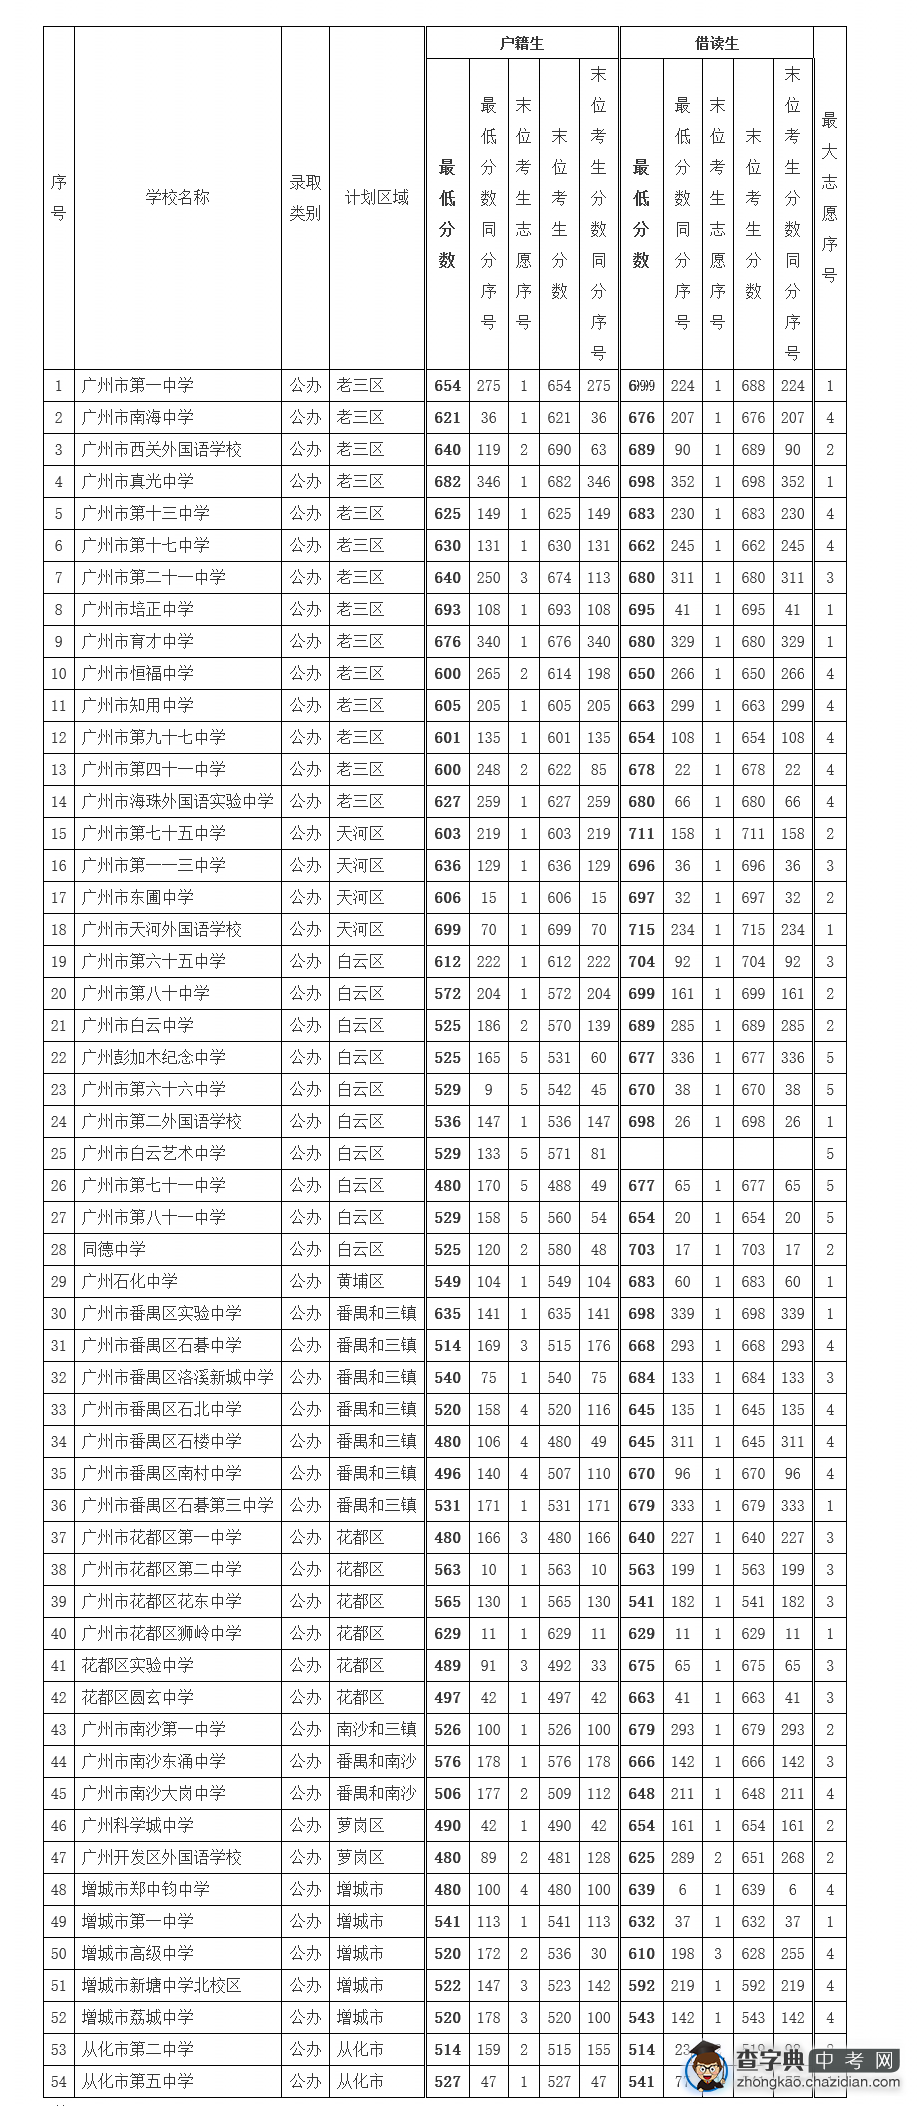 2015年广州中考第一批高中录取分数线汇总1